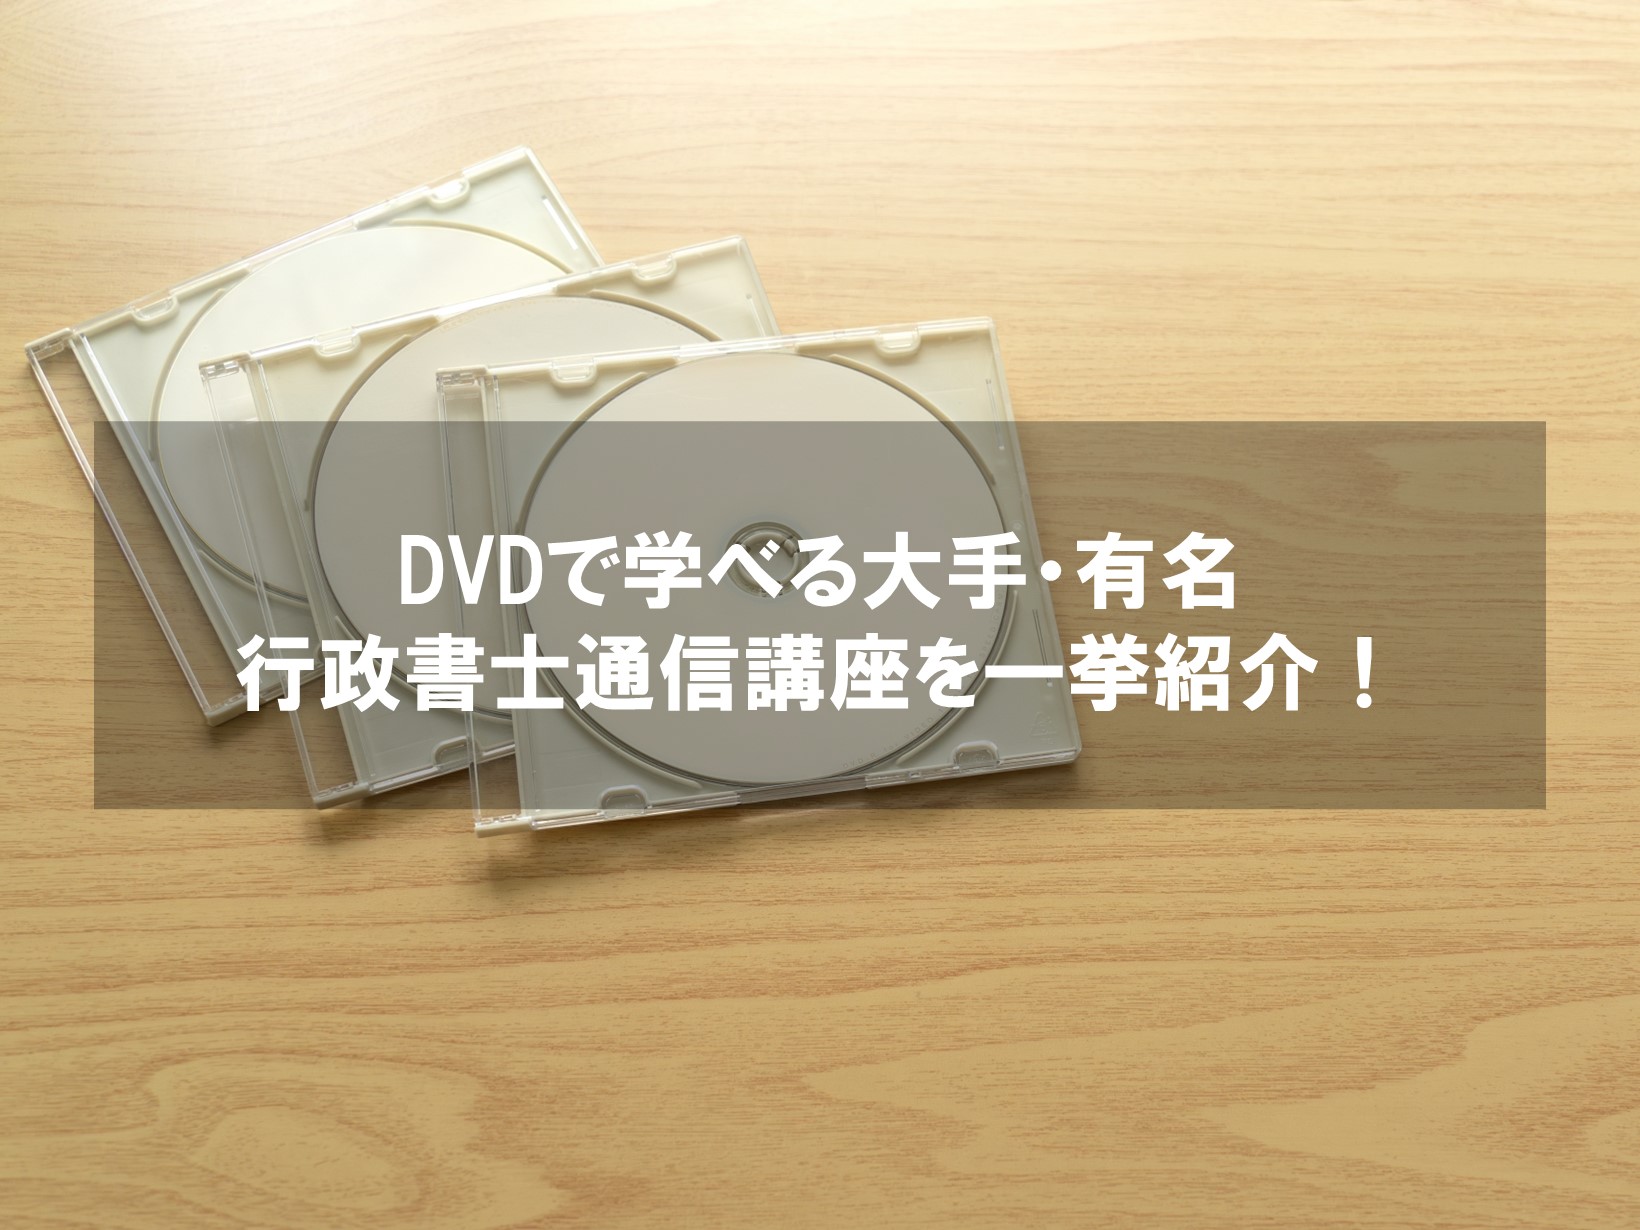 行政書士受験対策用DVD・CD教材